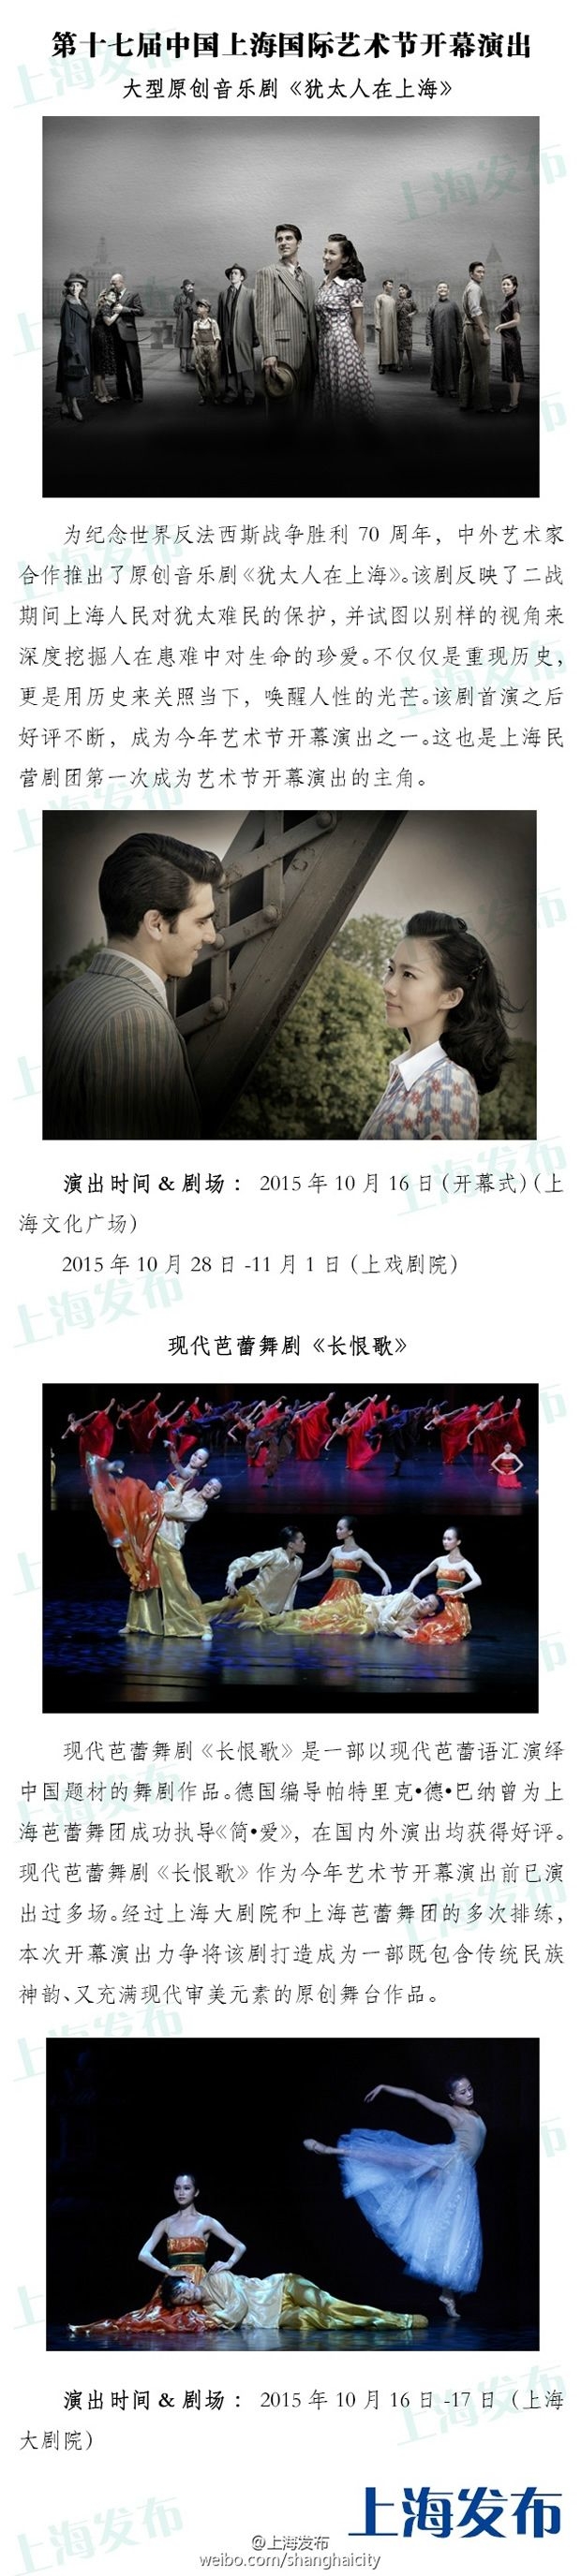 2015第17届中国上海国际艺术节 开幕 节目单一览